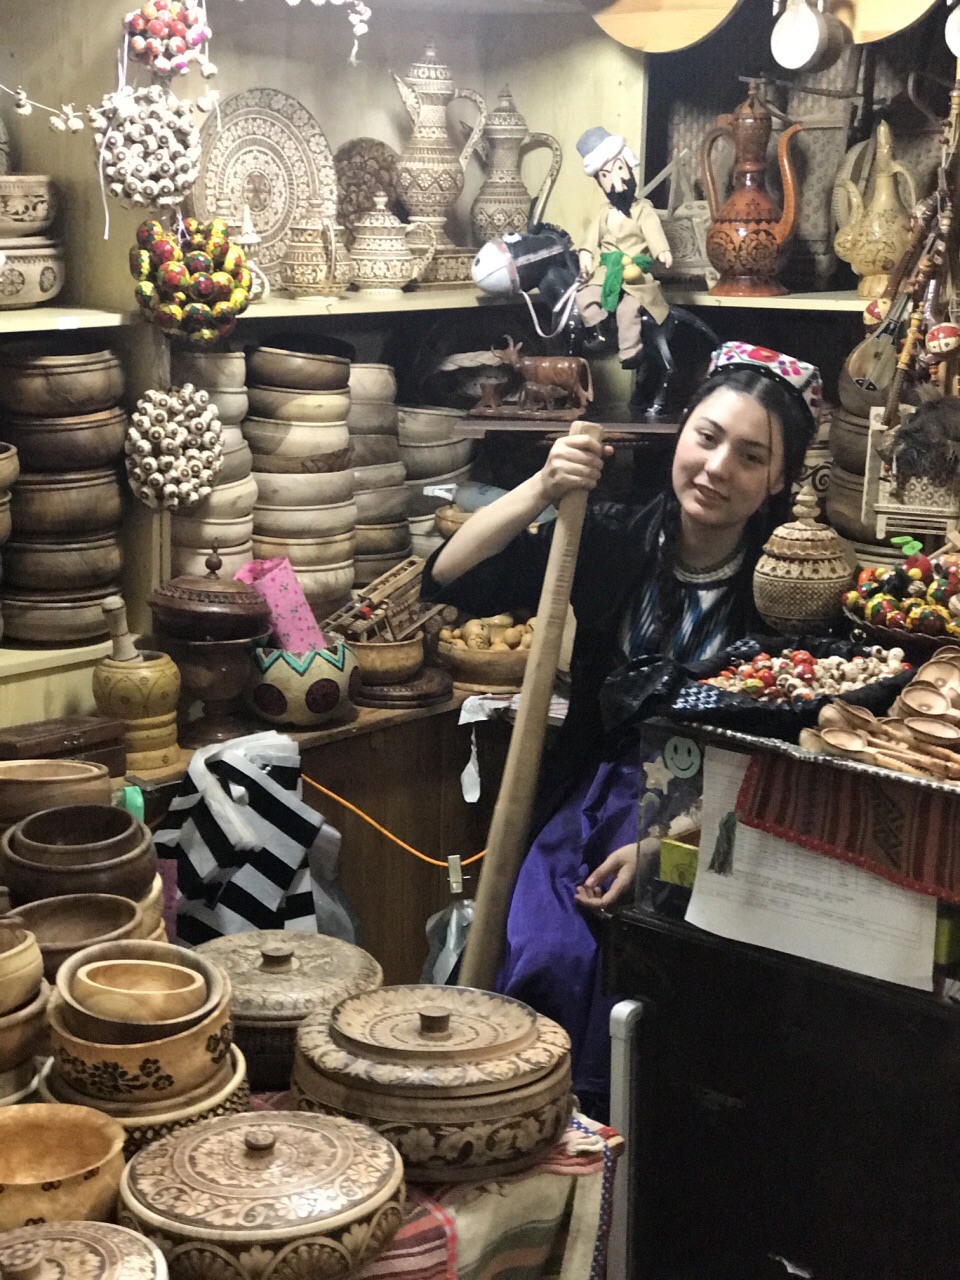 【携程攻略】乌鲁木齐民街购物,有种异国风情的感觉这里的手工艺品很